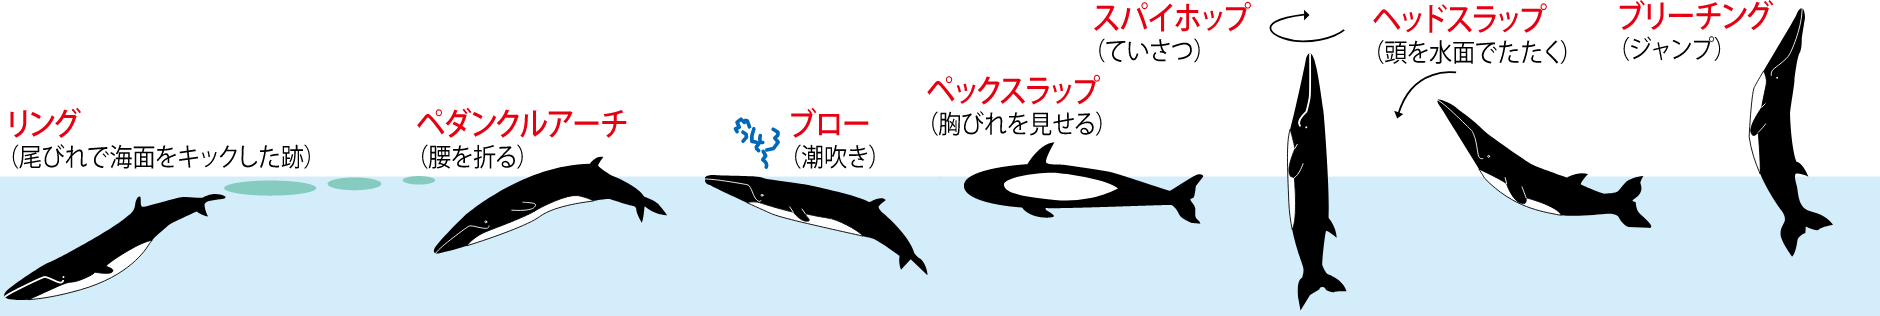 ニタリクジラの代用的な行動